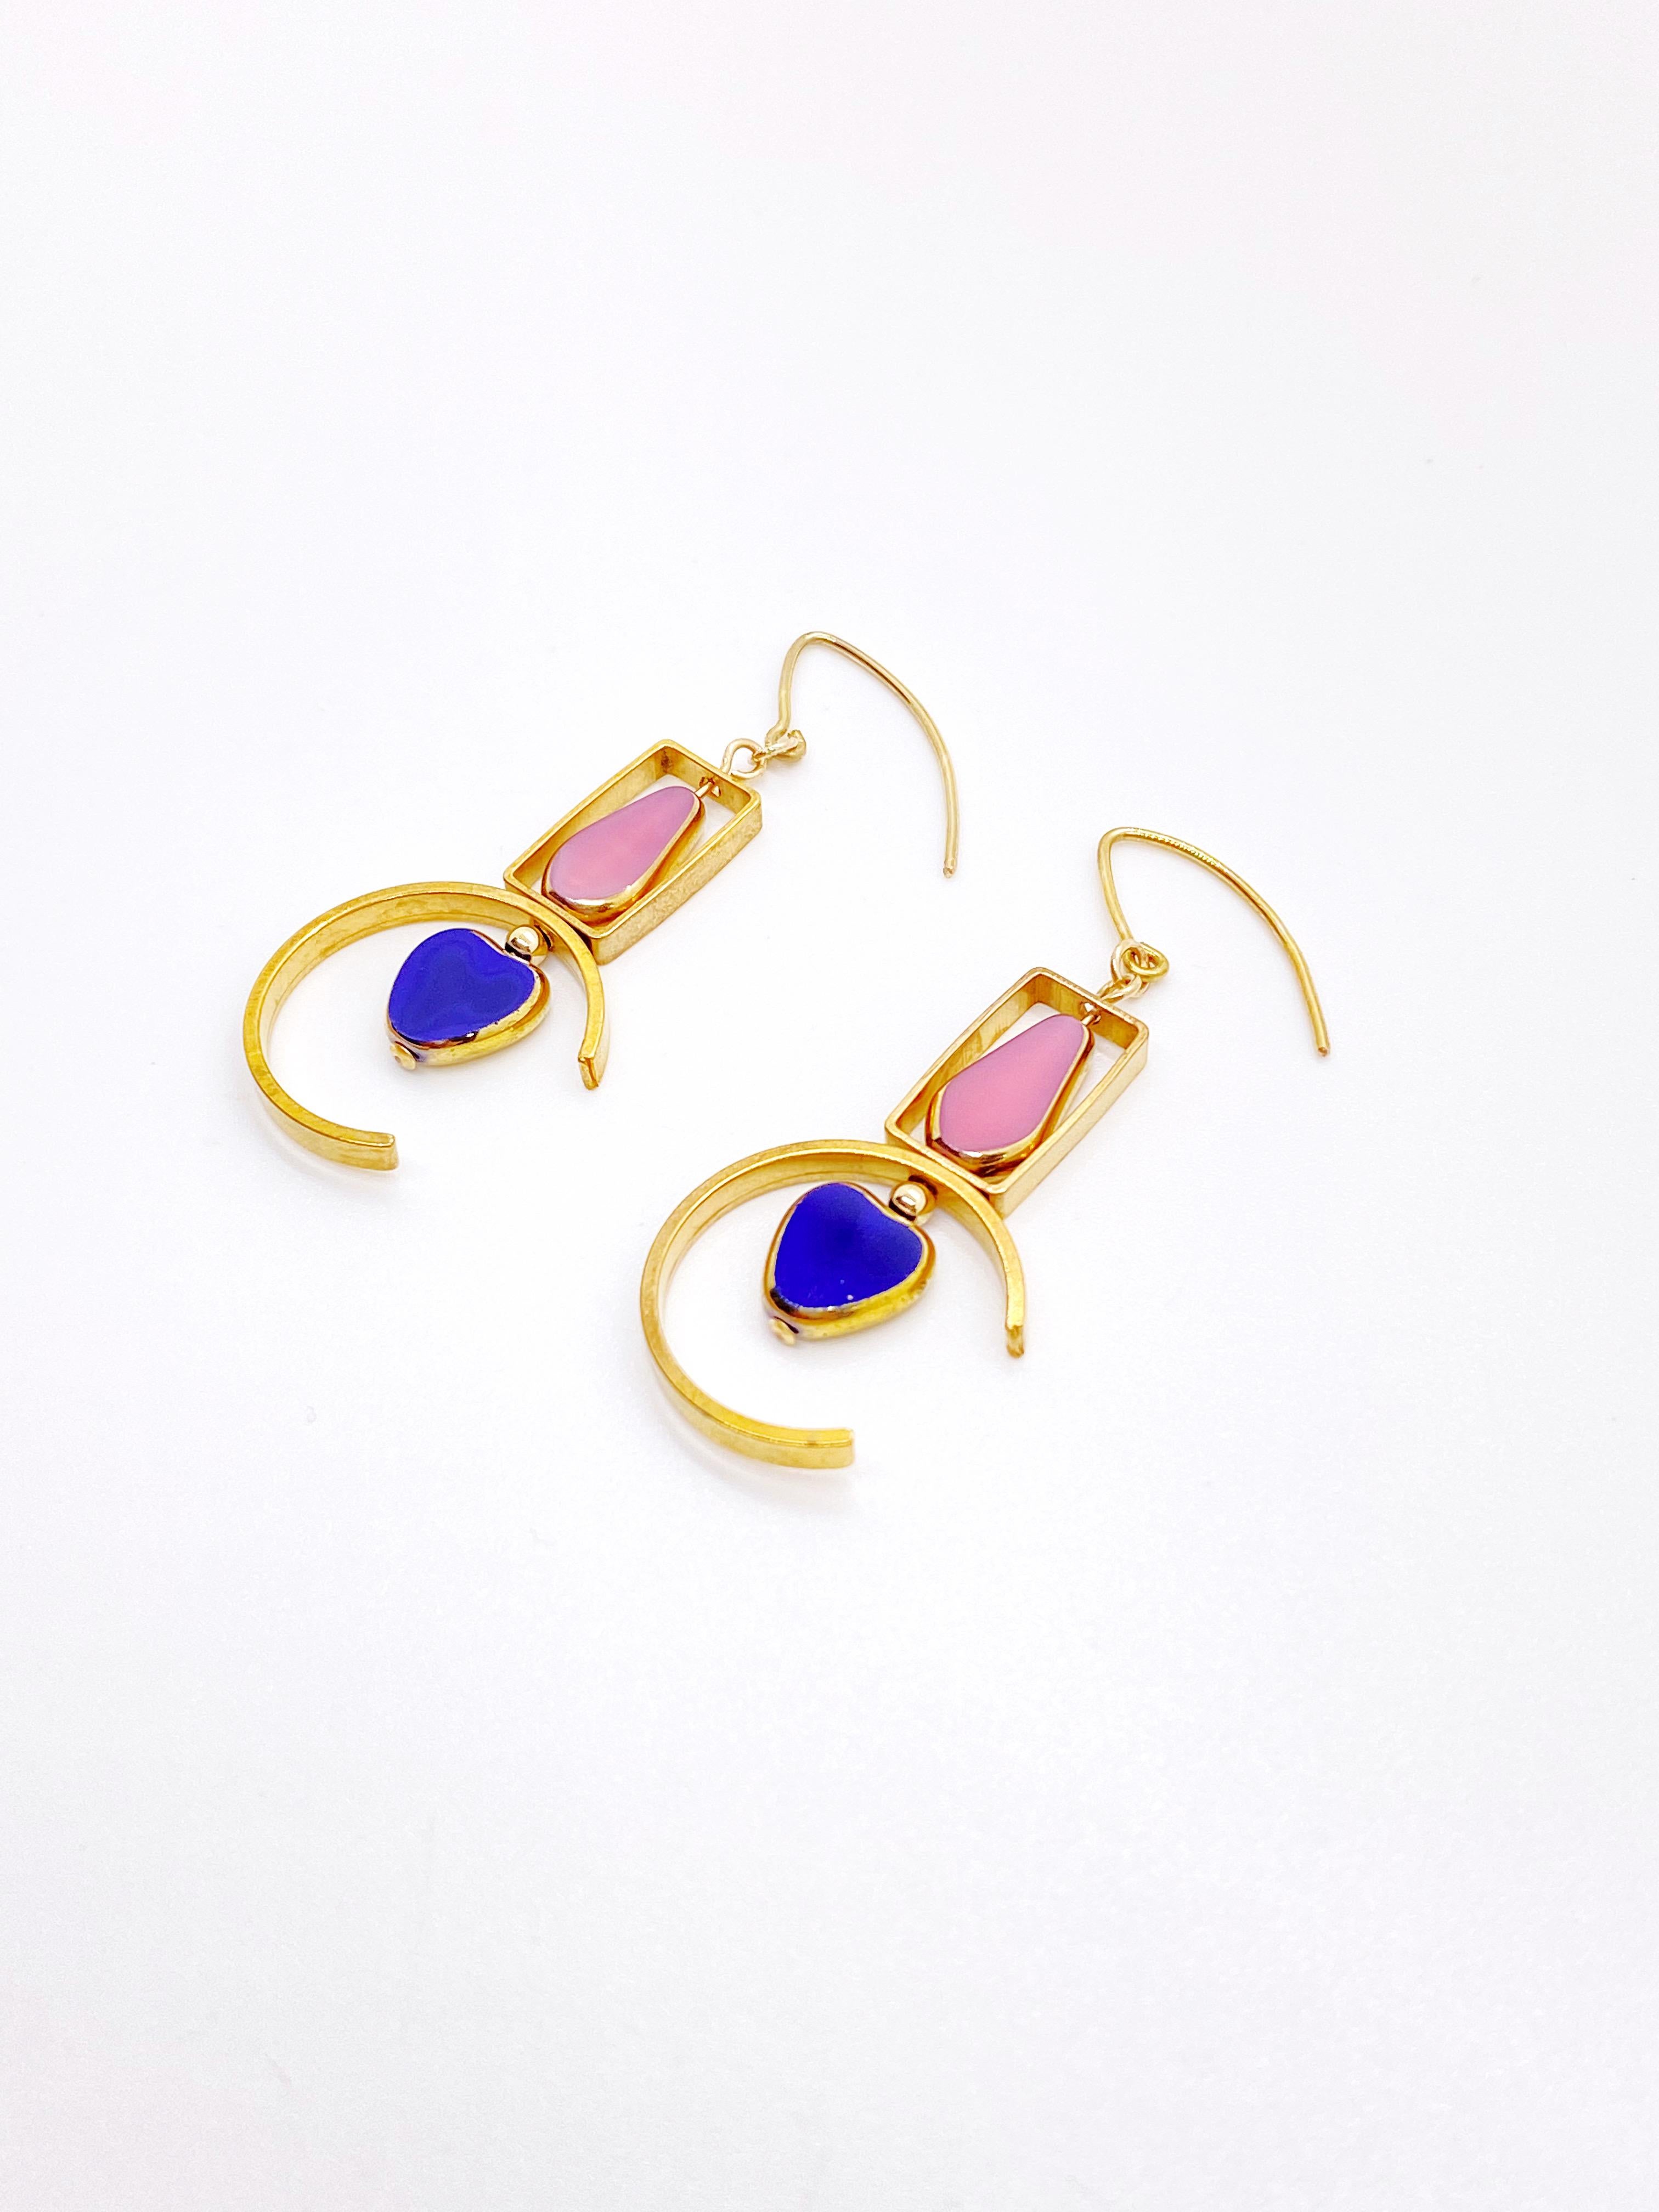 Dies ist für einen Satz Ohrringe. Die Ohrringe bestehen aus blauen herzförmigen und rosa länglichen fünfeckigen Perlen. Es handelt sich um neue alte deutsche Glasperlen, die mit 24-karätigem Gold umrahmt sind. Die Perlen wurden in den 1920er bis